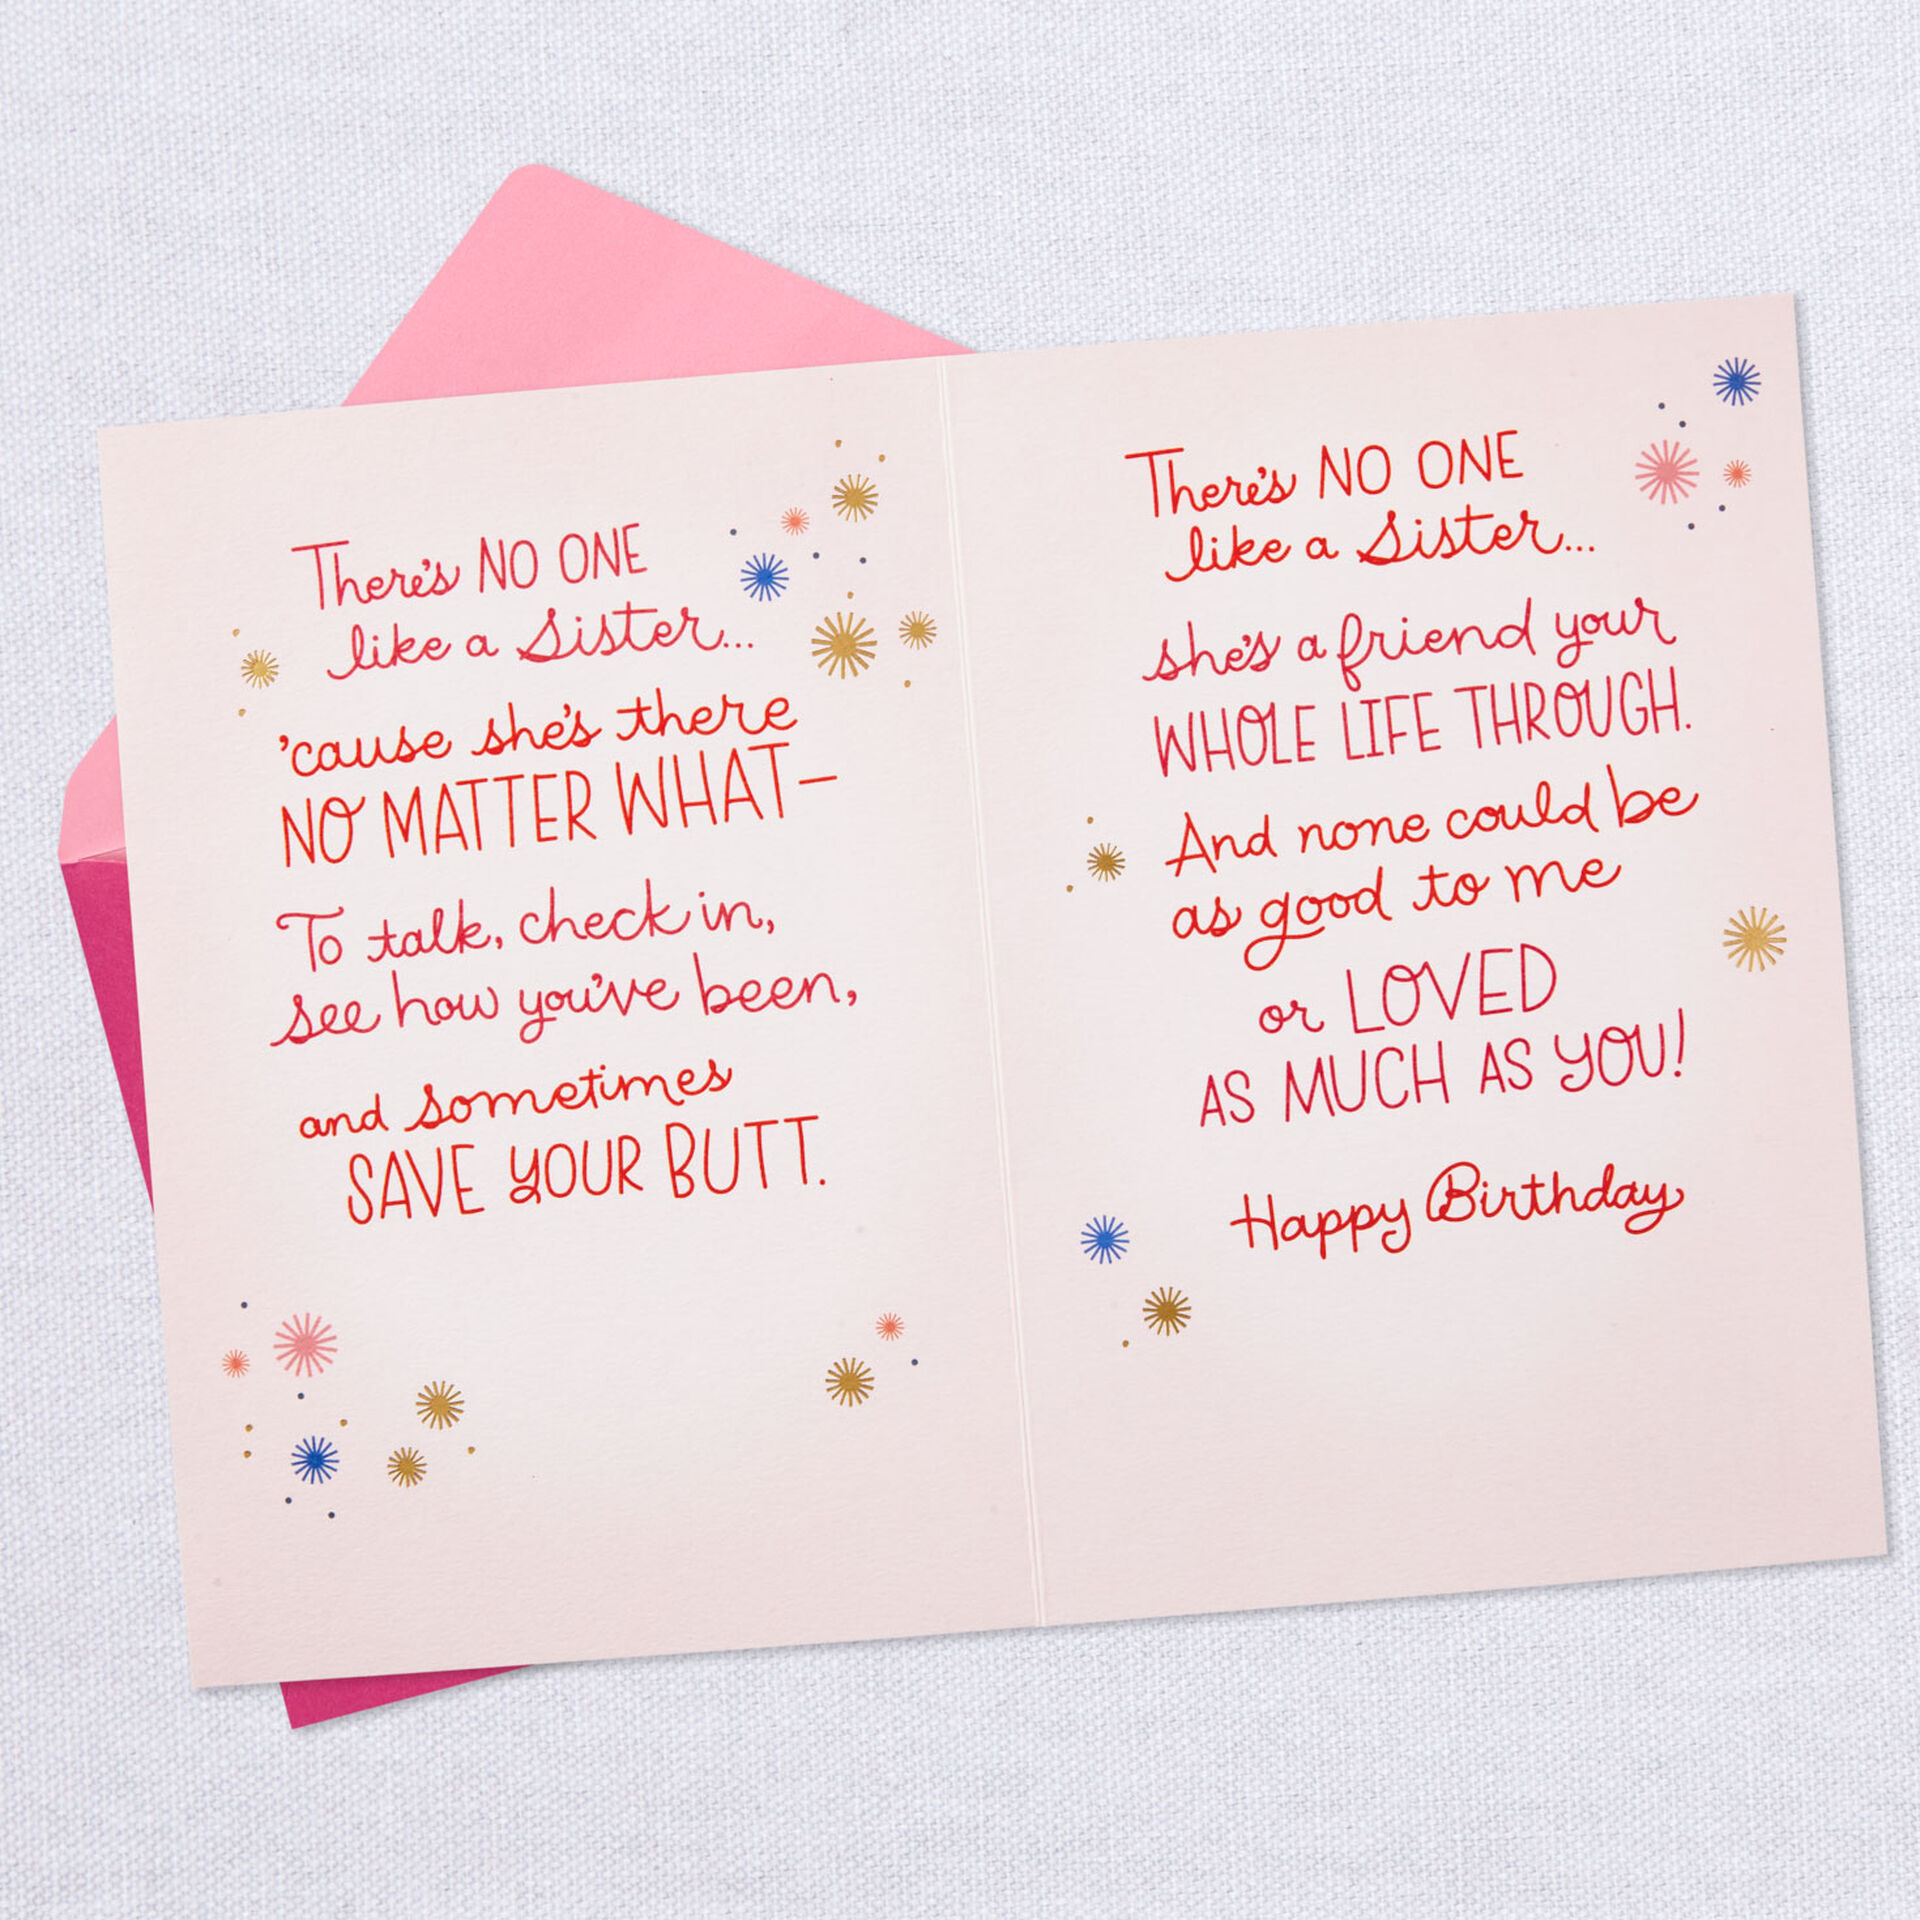 Cute-Birds-No-One-Like-a-Sister-Poem-Birthday-Card_599FBD3841_03